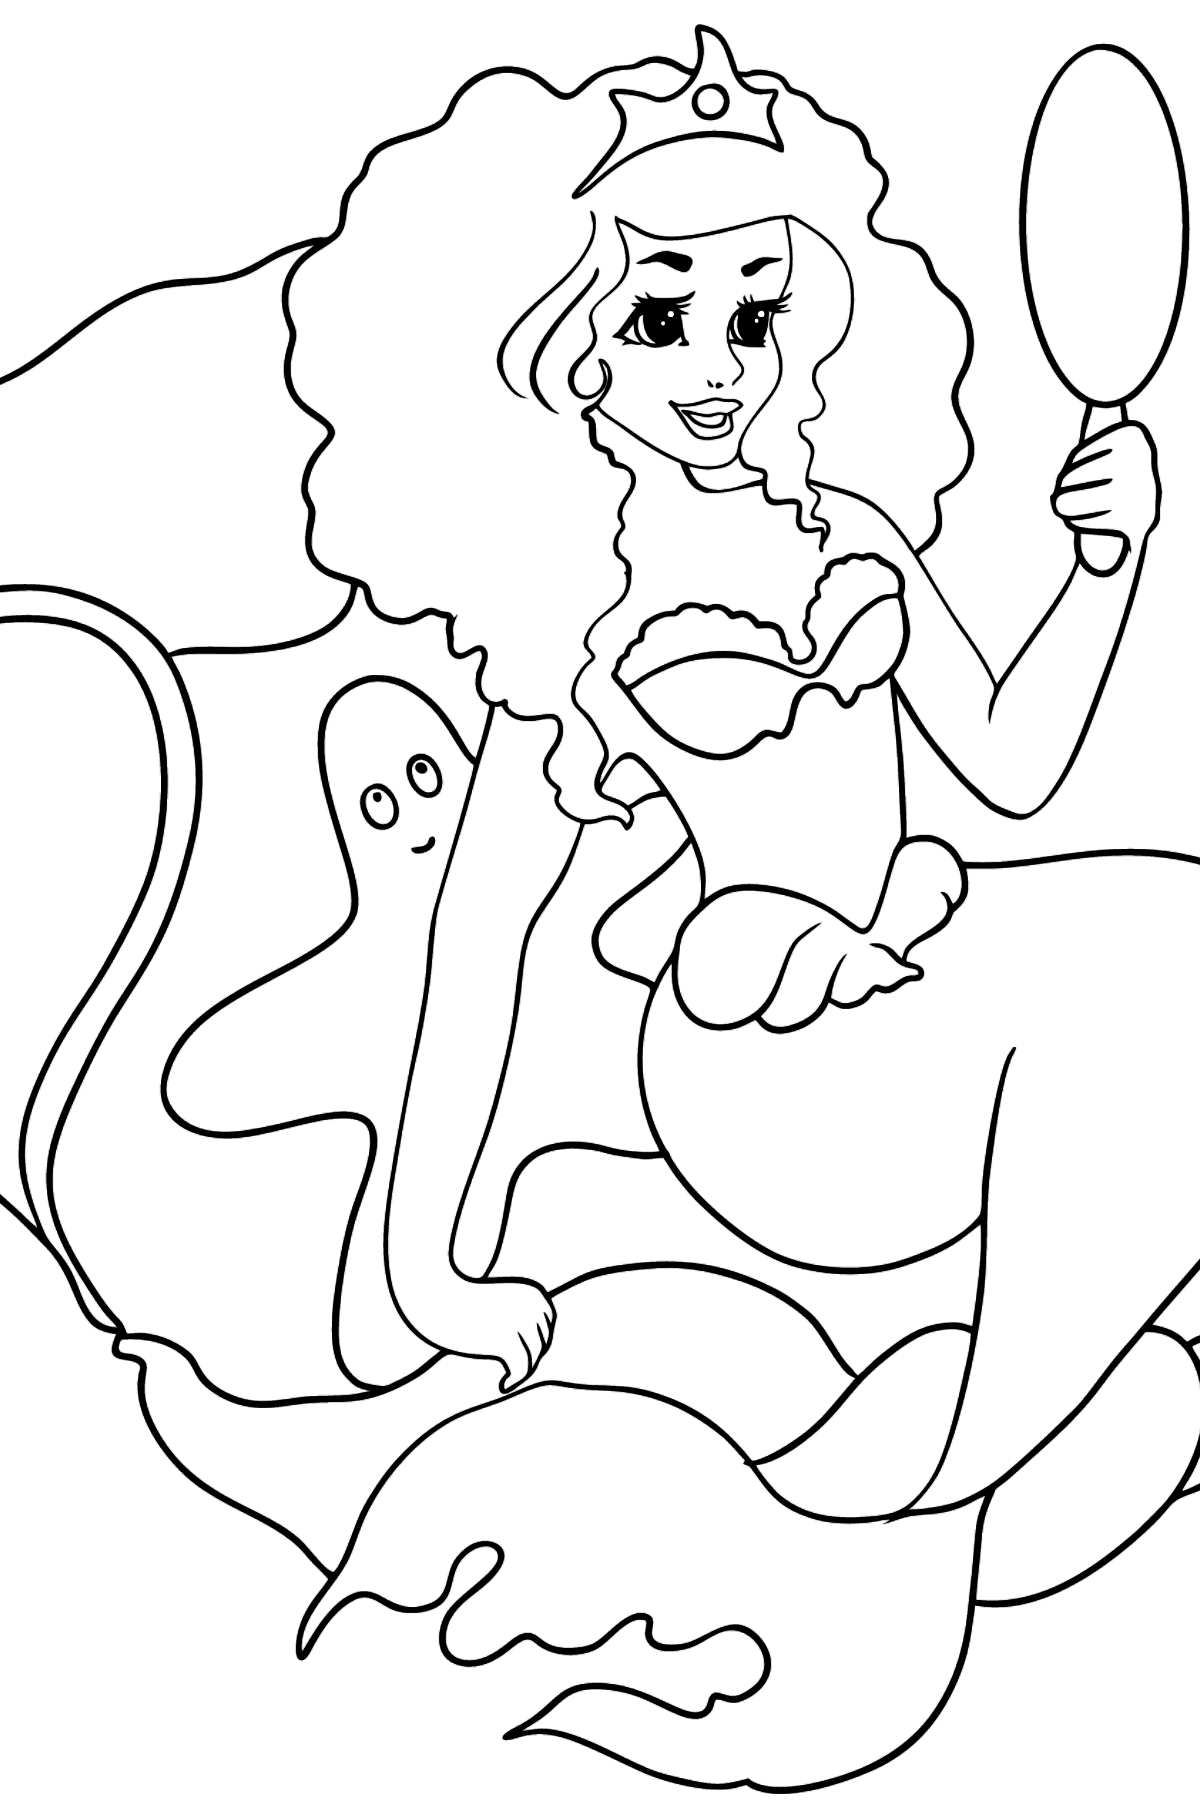 Desen de colorat amabila sirena - Desene de colorat pentru copii